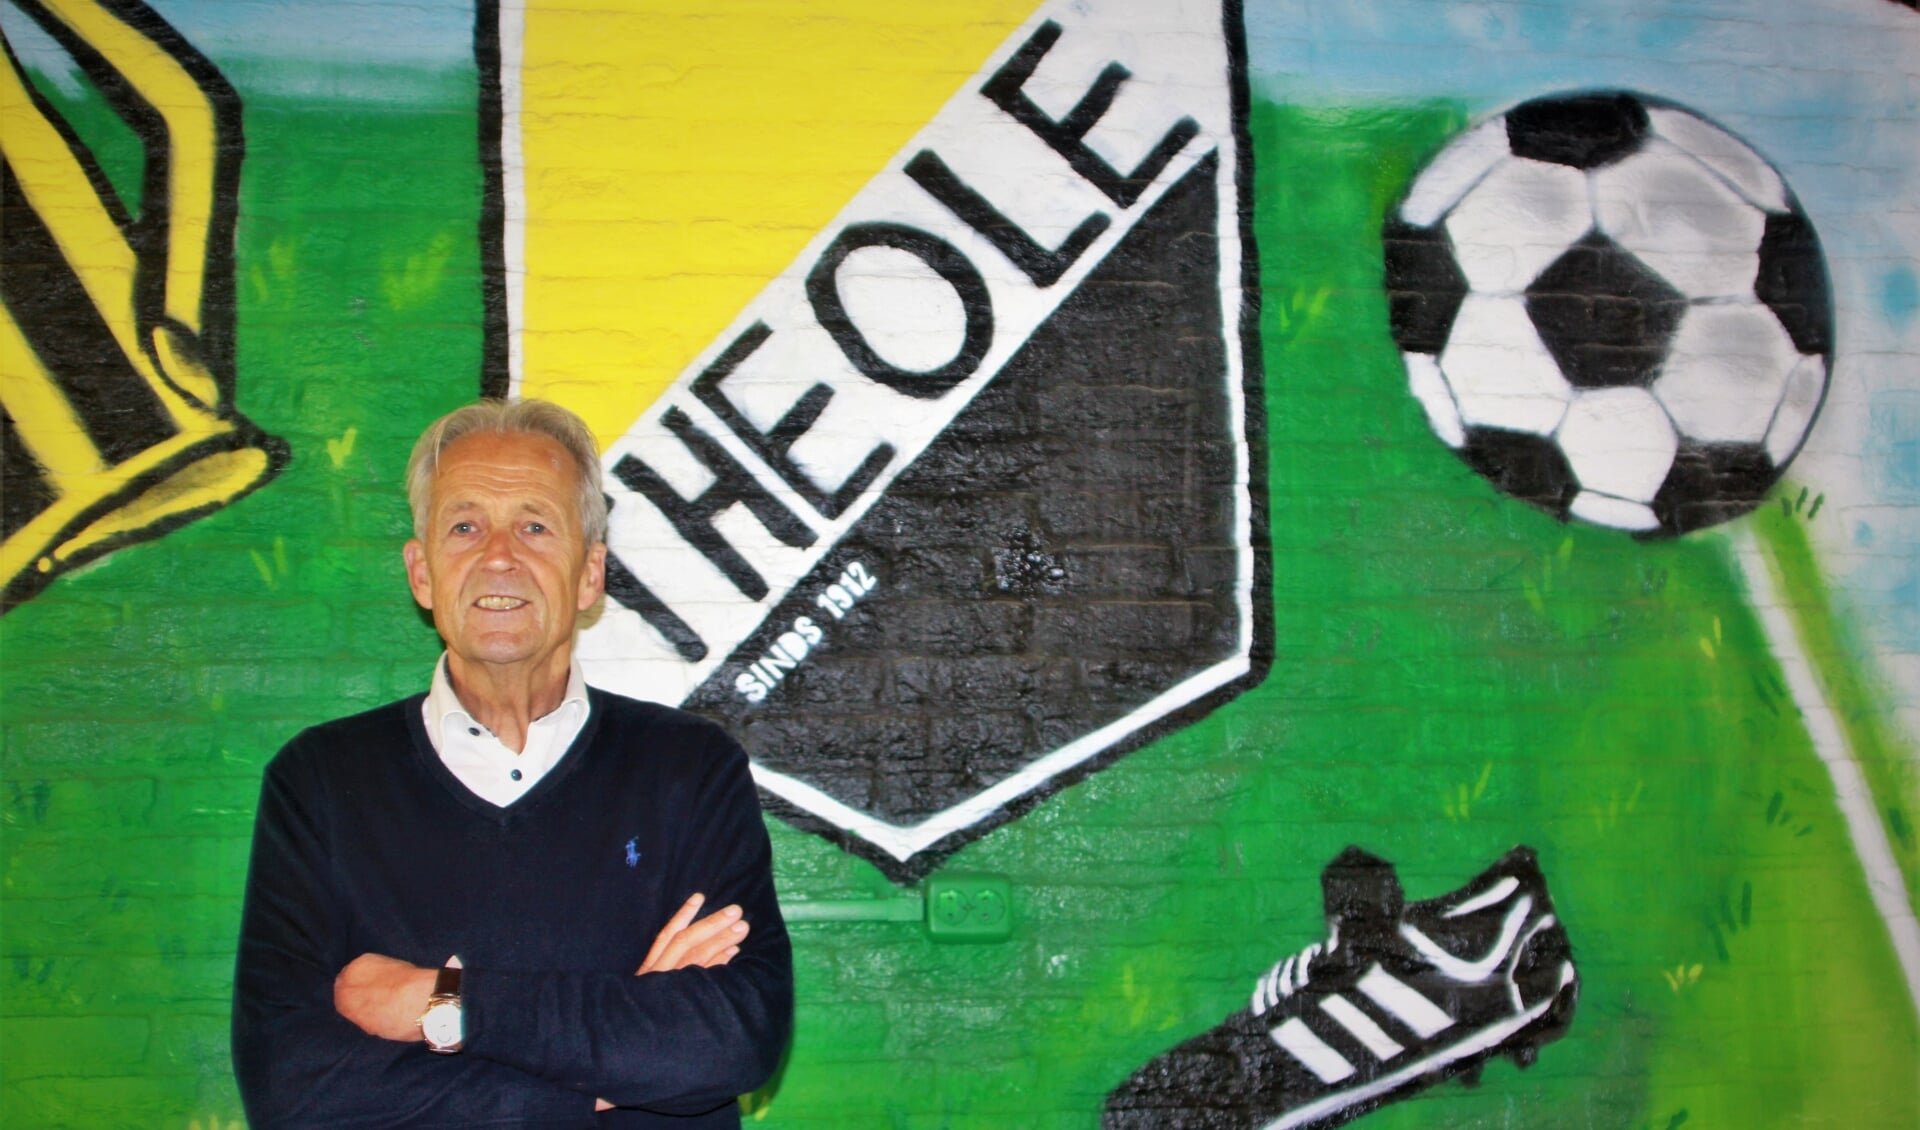 De voorzitter van Theole, Joan van den Heuvel, bij de muurschildering in de kantine van 'zijn' club.